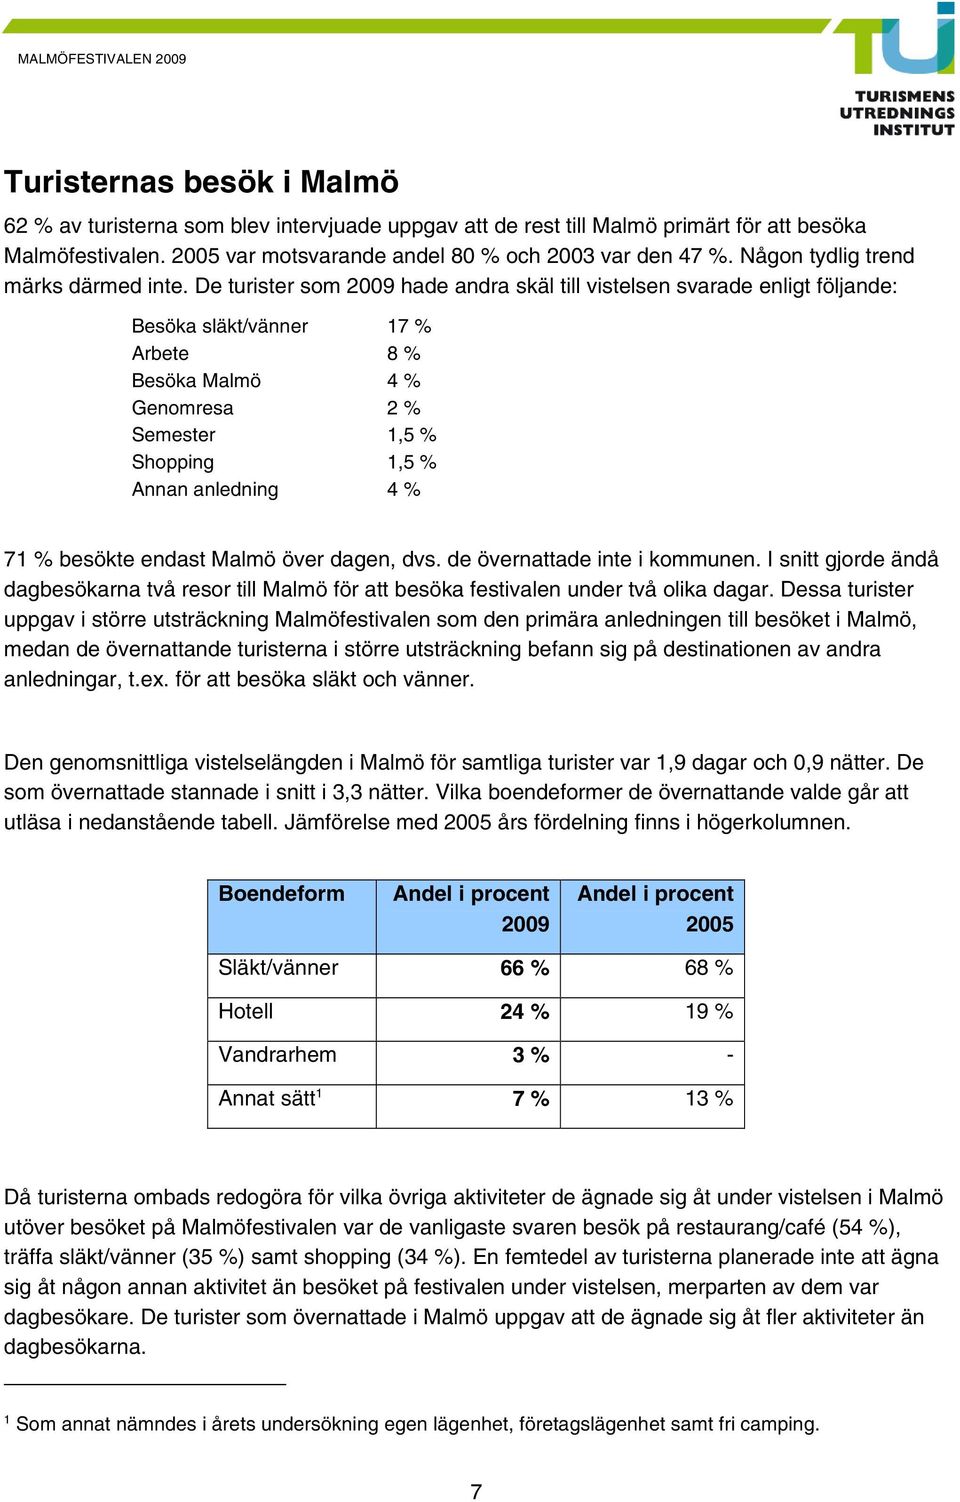 De turister som 009 hade andra skäl till vistelsen svarade enligt följande: Besöka släkt/vänner 7 % Arbete 8 % Besöka Malmö 4 % Genomresa % Semester,5 % Shopping,5 % Annan anledning 4 % 7 % besökte